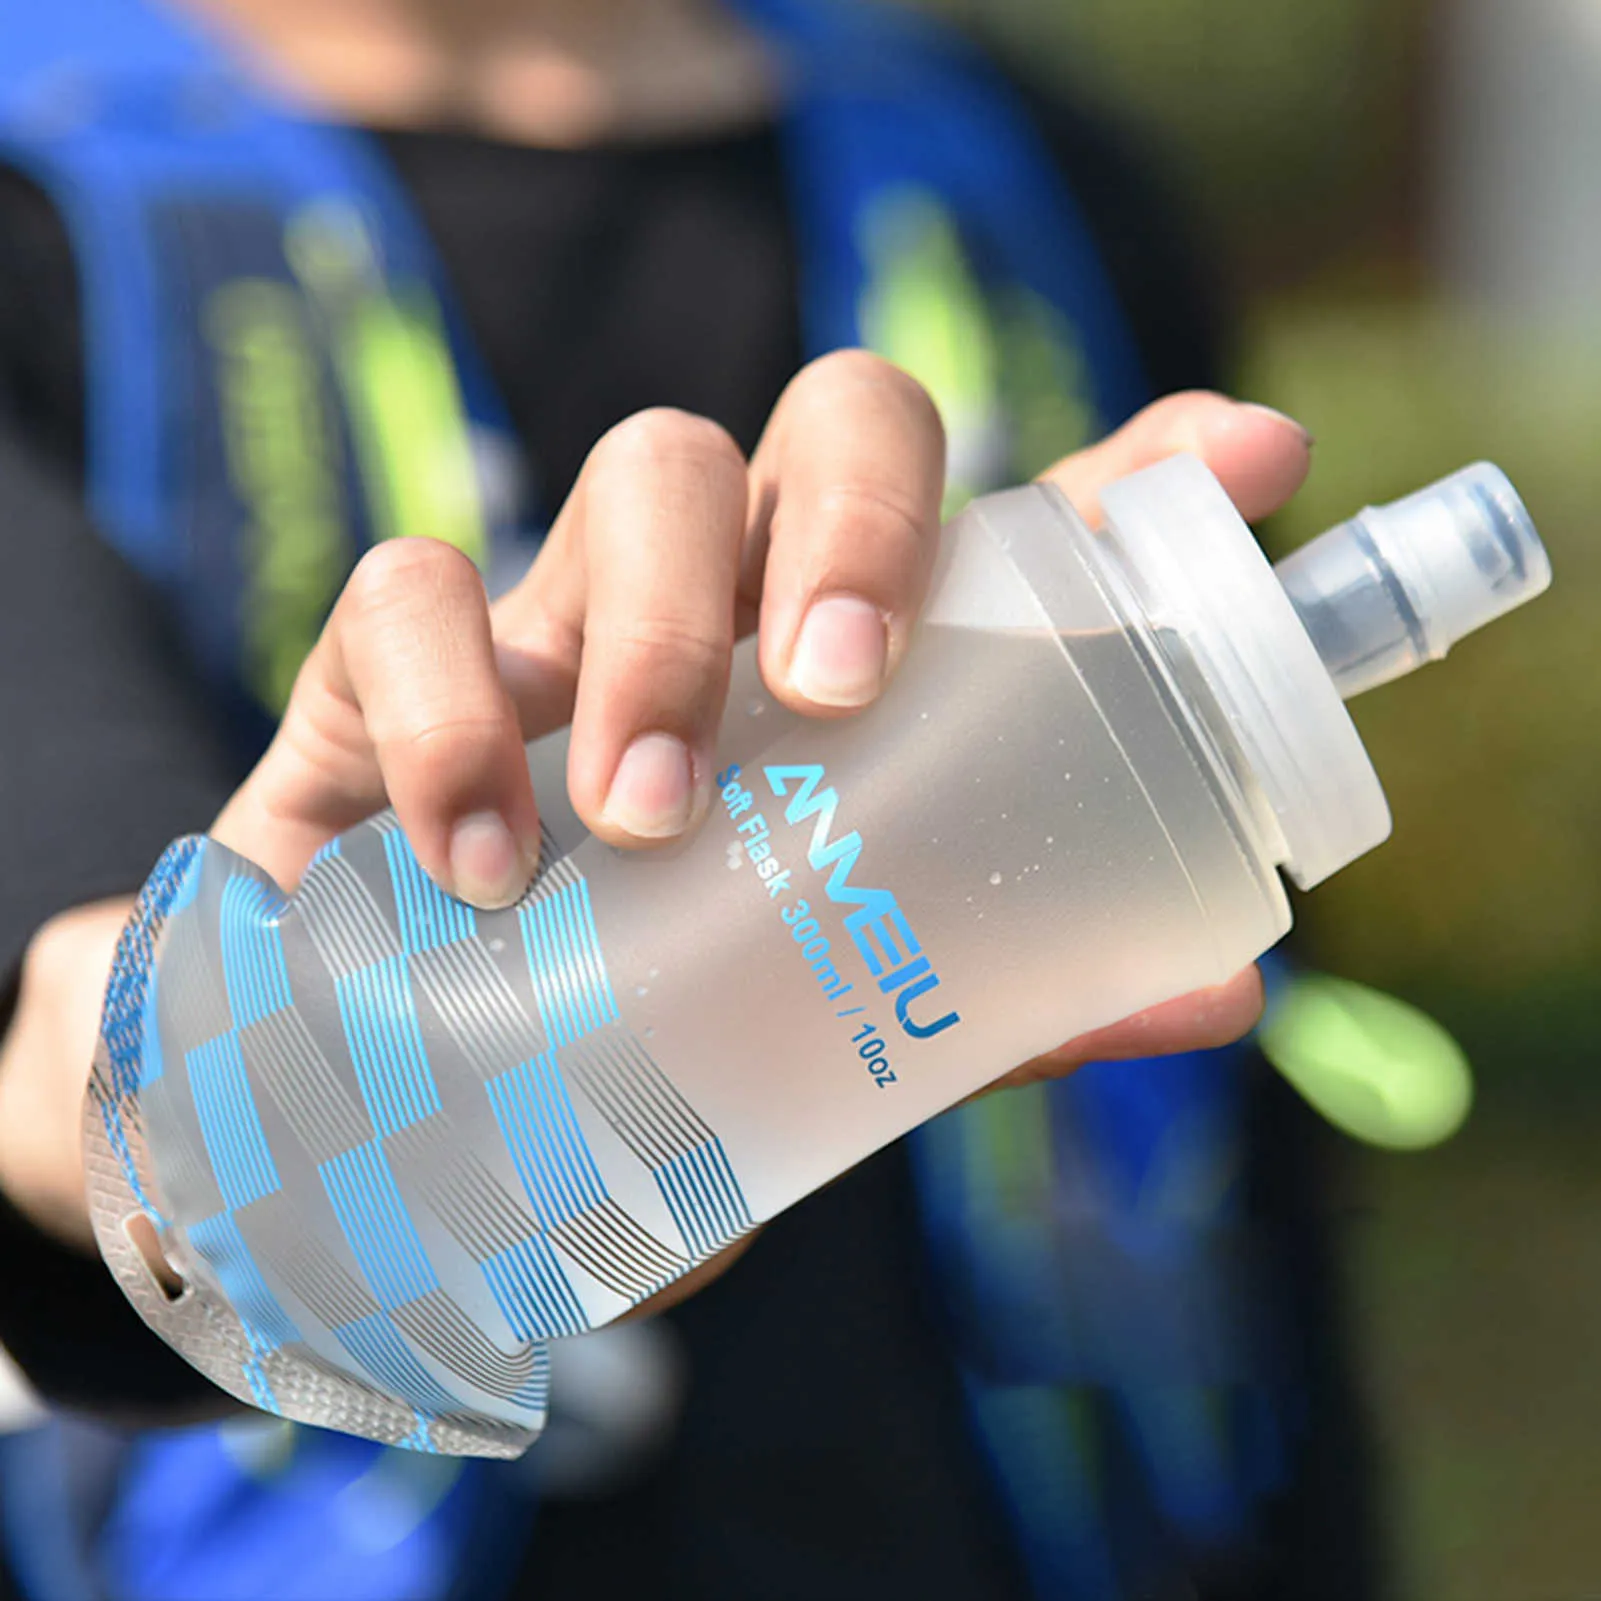 300 ml souple pliable bouteille d'eau pliable souple TPU boisson bouteille d'eau sac d'eau flacon pour le sport en plein air en cours d'exécution cyclisme Y0915